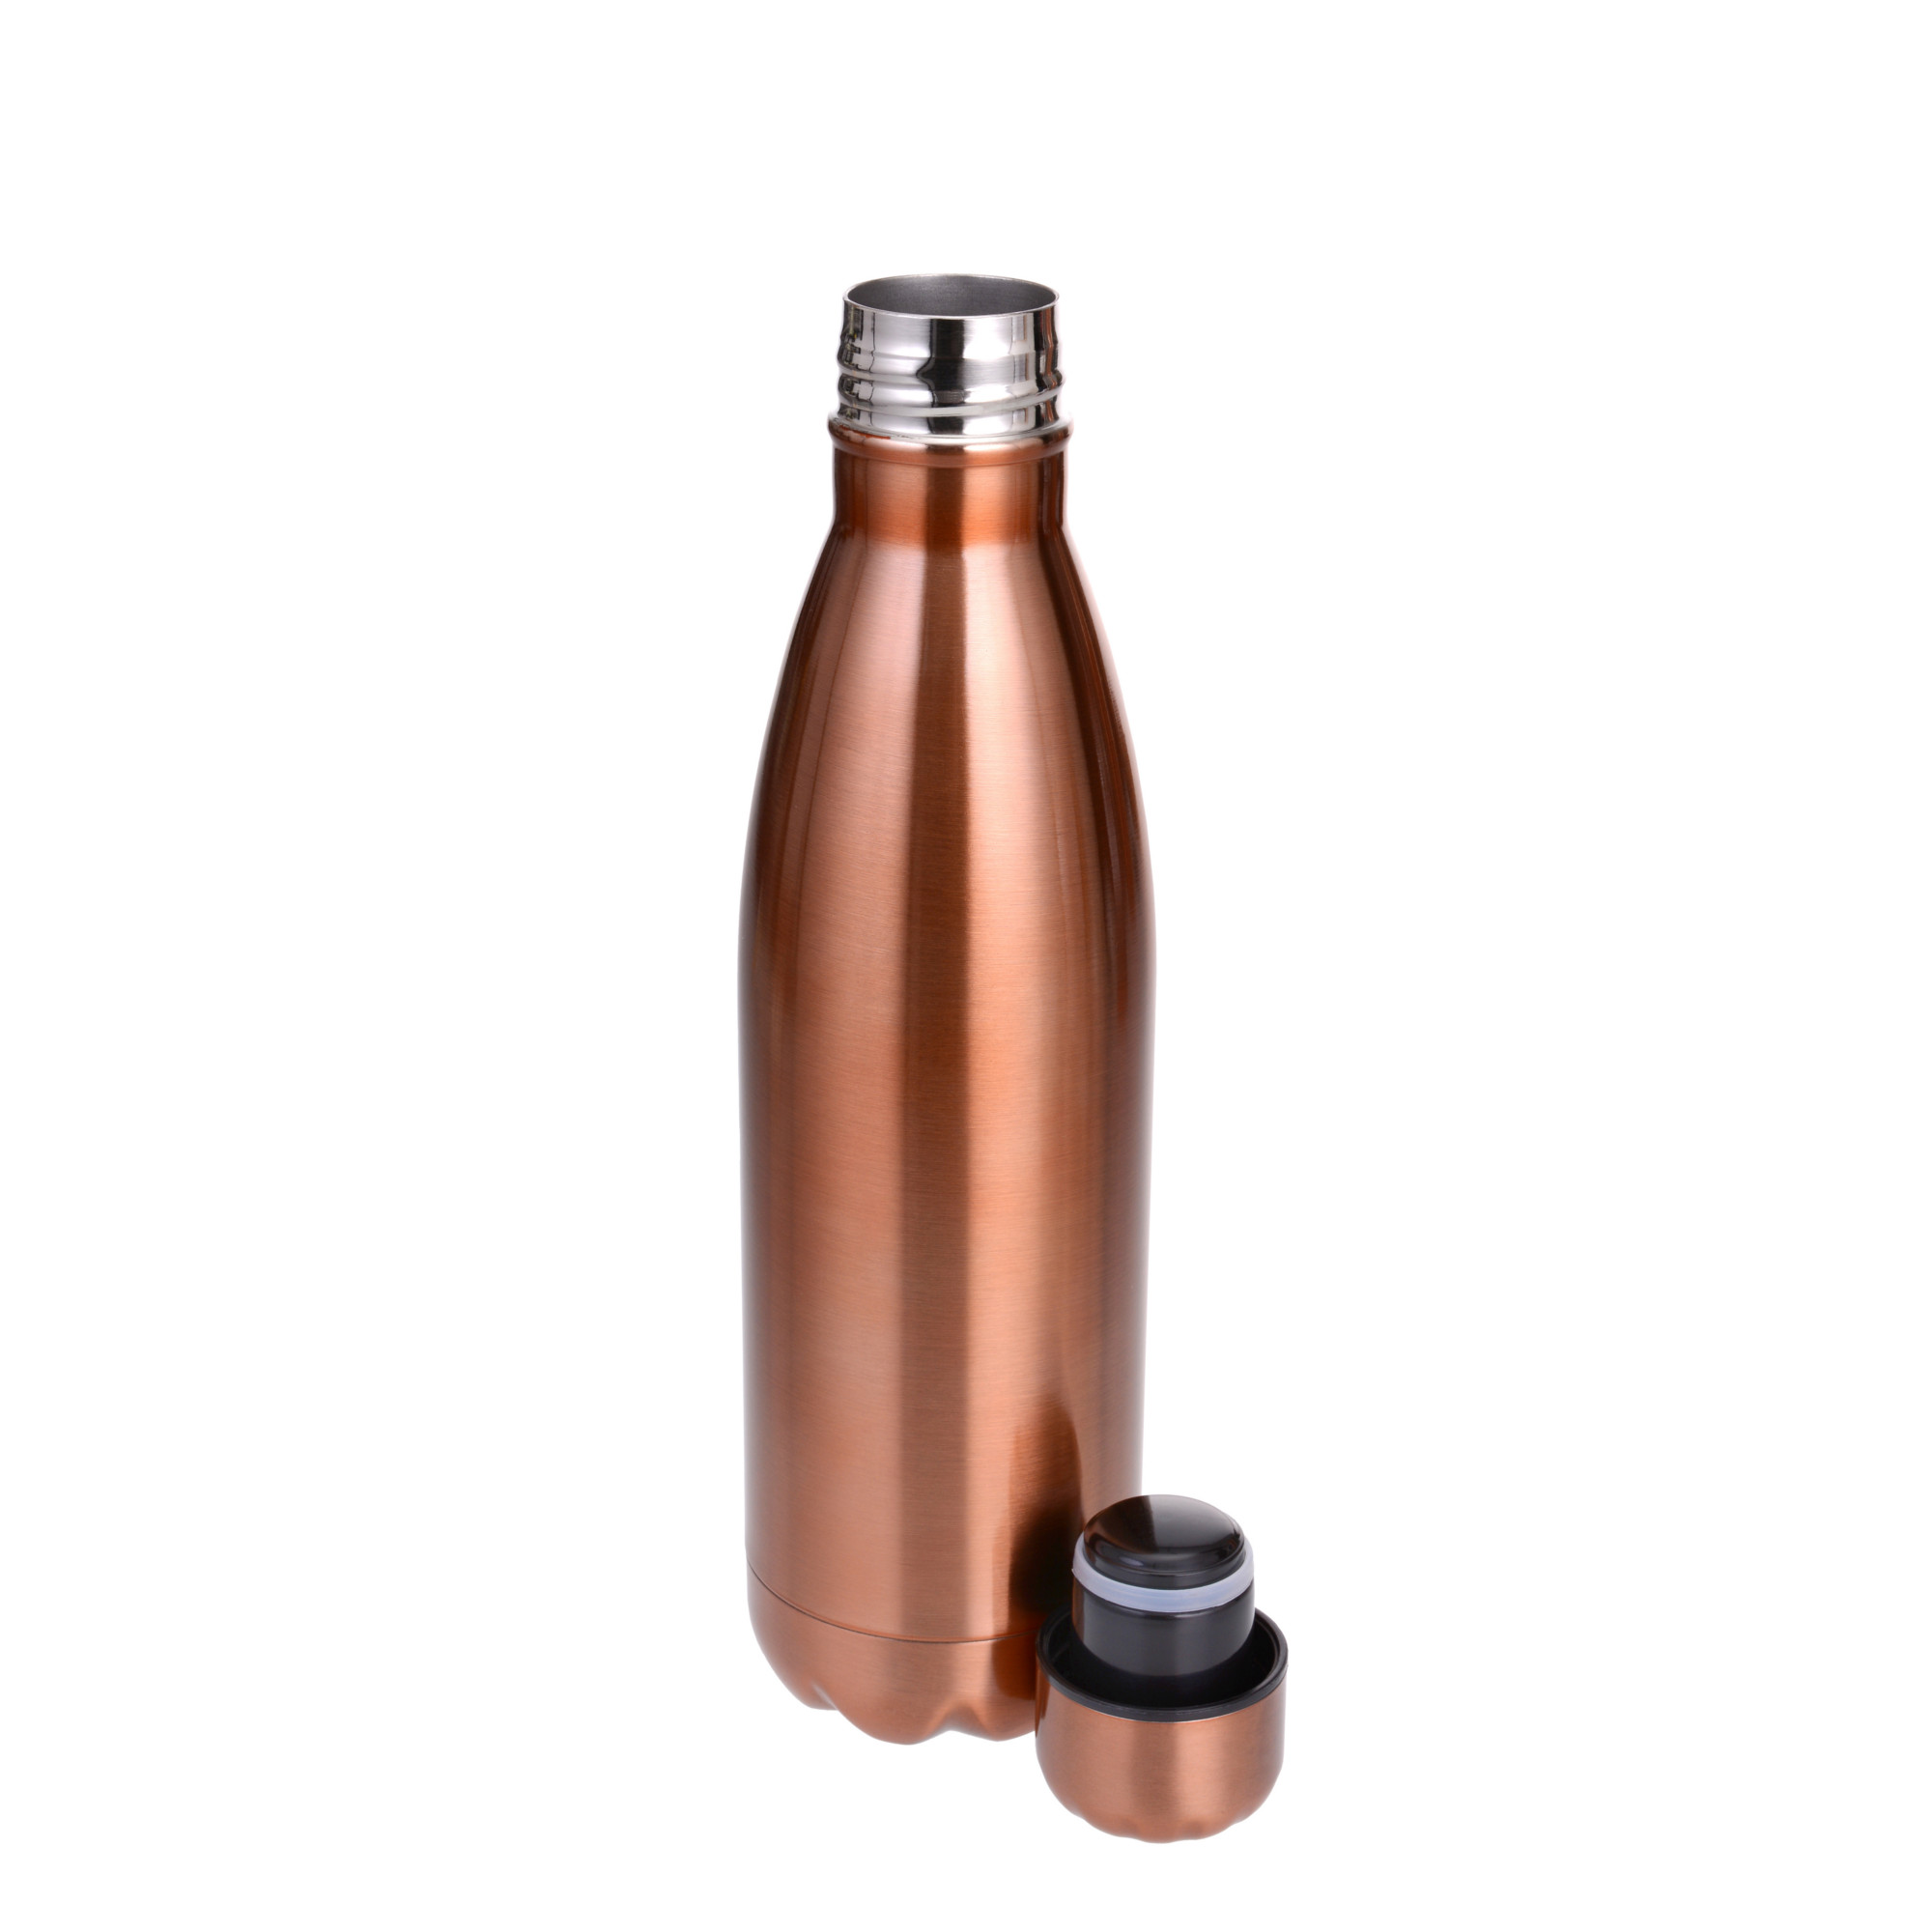 Thermosflasche, 500 ml, Edelstahl, Kohlensäure geeignet, kupferfarbig